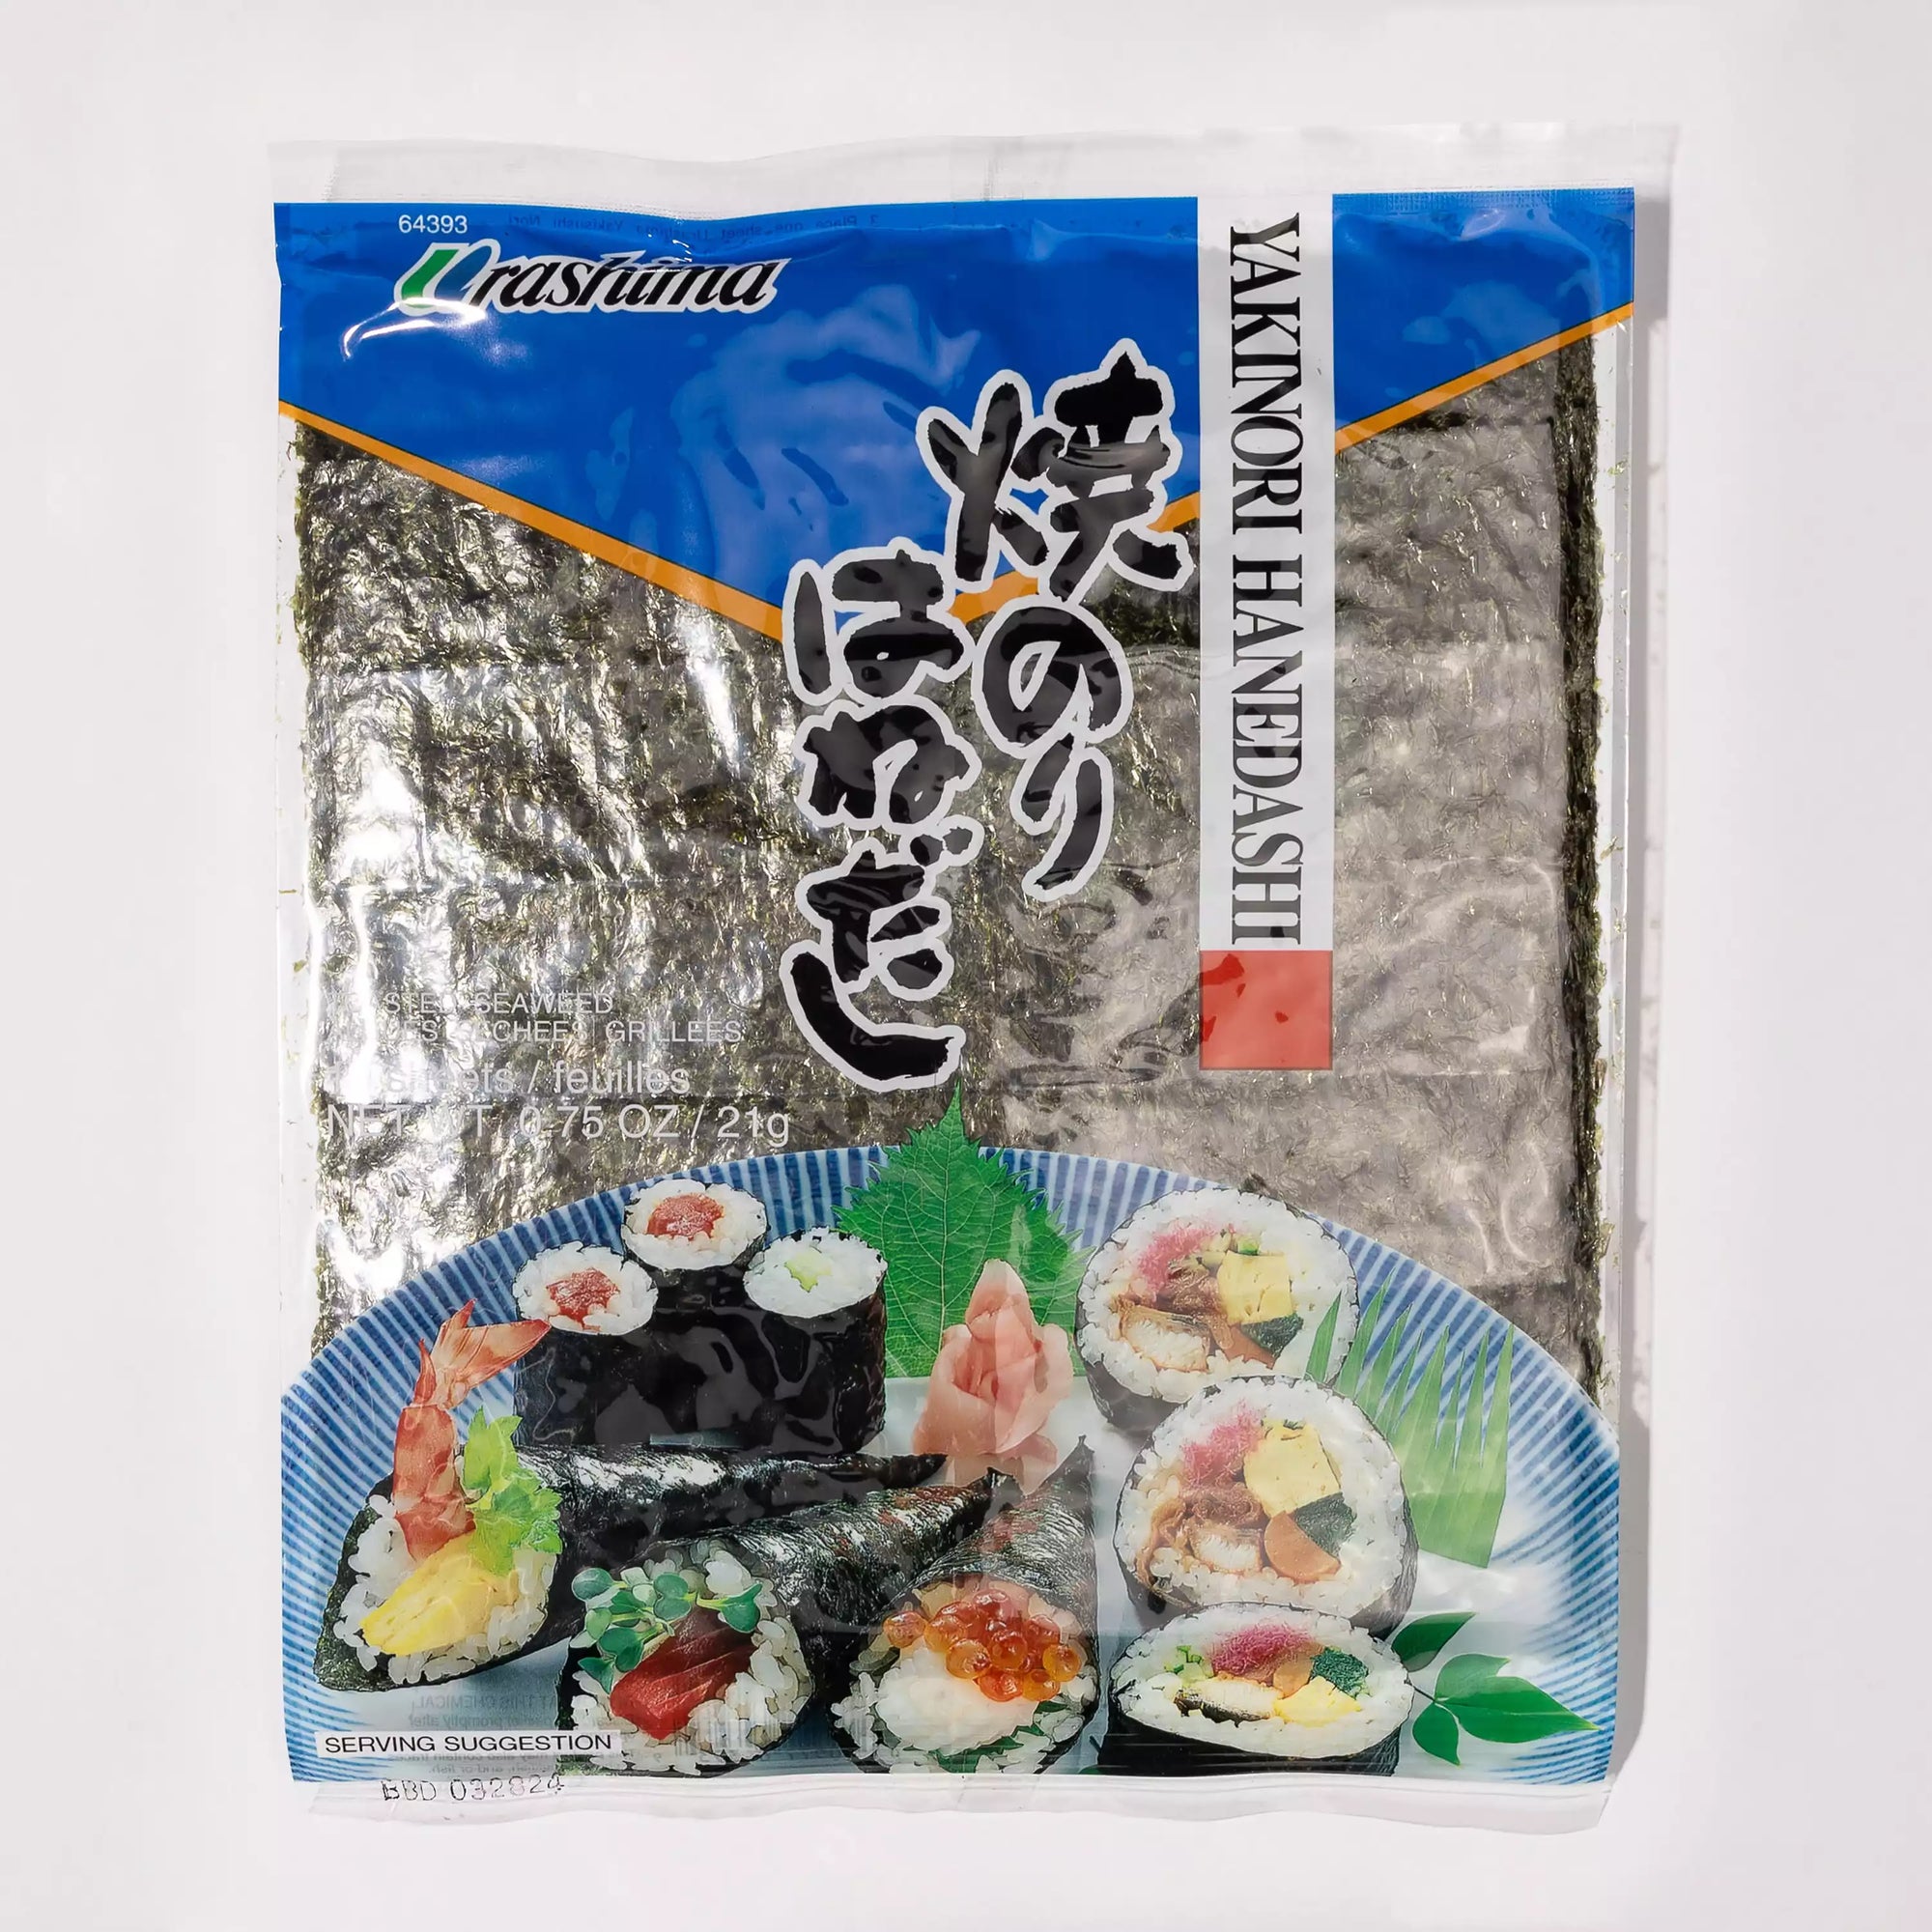  Global Grub DIY Sushi Making Kit - Sushi Kit Includes Sushi  Rice, Nori Sushi Seaweed, Rice Vinegar Powder, Sesame Seeds, Wasabi Powder,  Bamboo Sushi Rolling Mat, Instructions, Makes 48 Pieces 